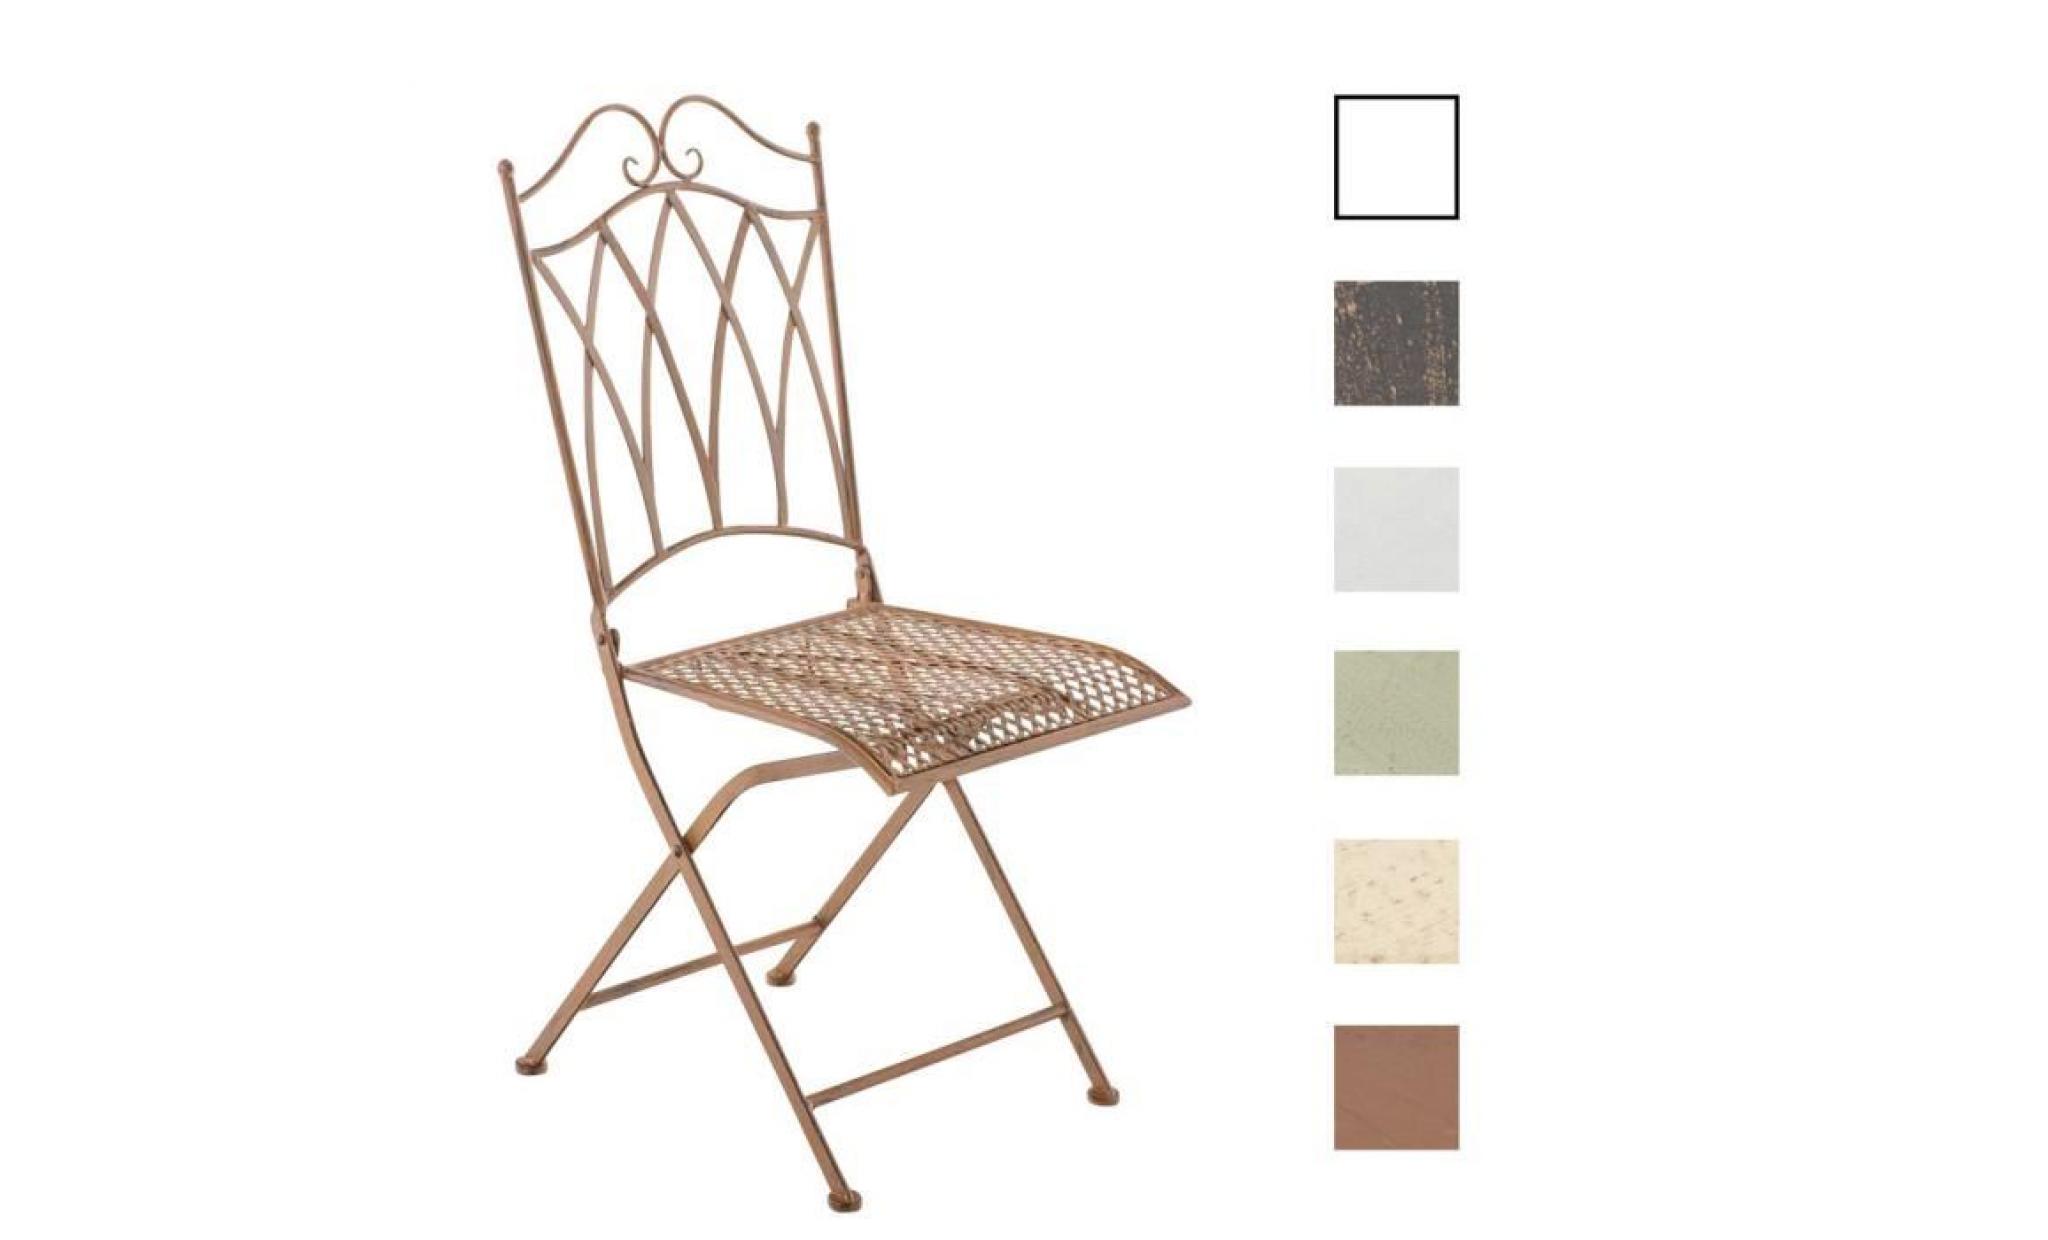 clp chaise nostalgique pliable lunis, chaise fer forgé, chaise pliante, chaise antique, 6 couleurs au choix 91 cm marron antique